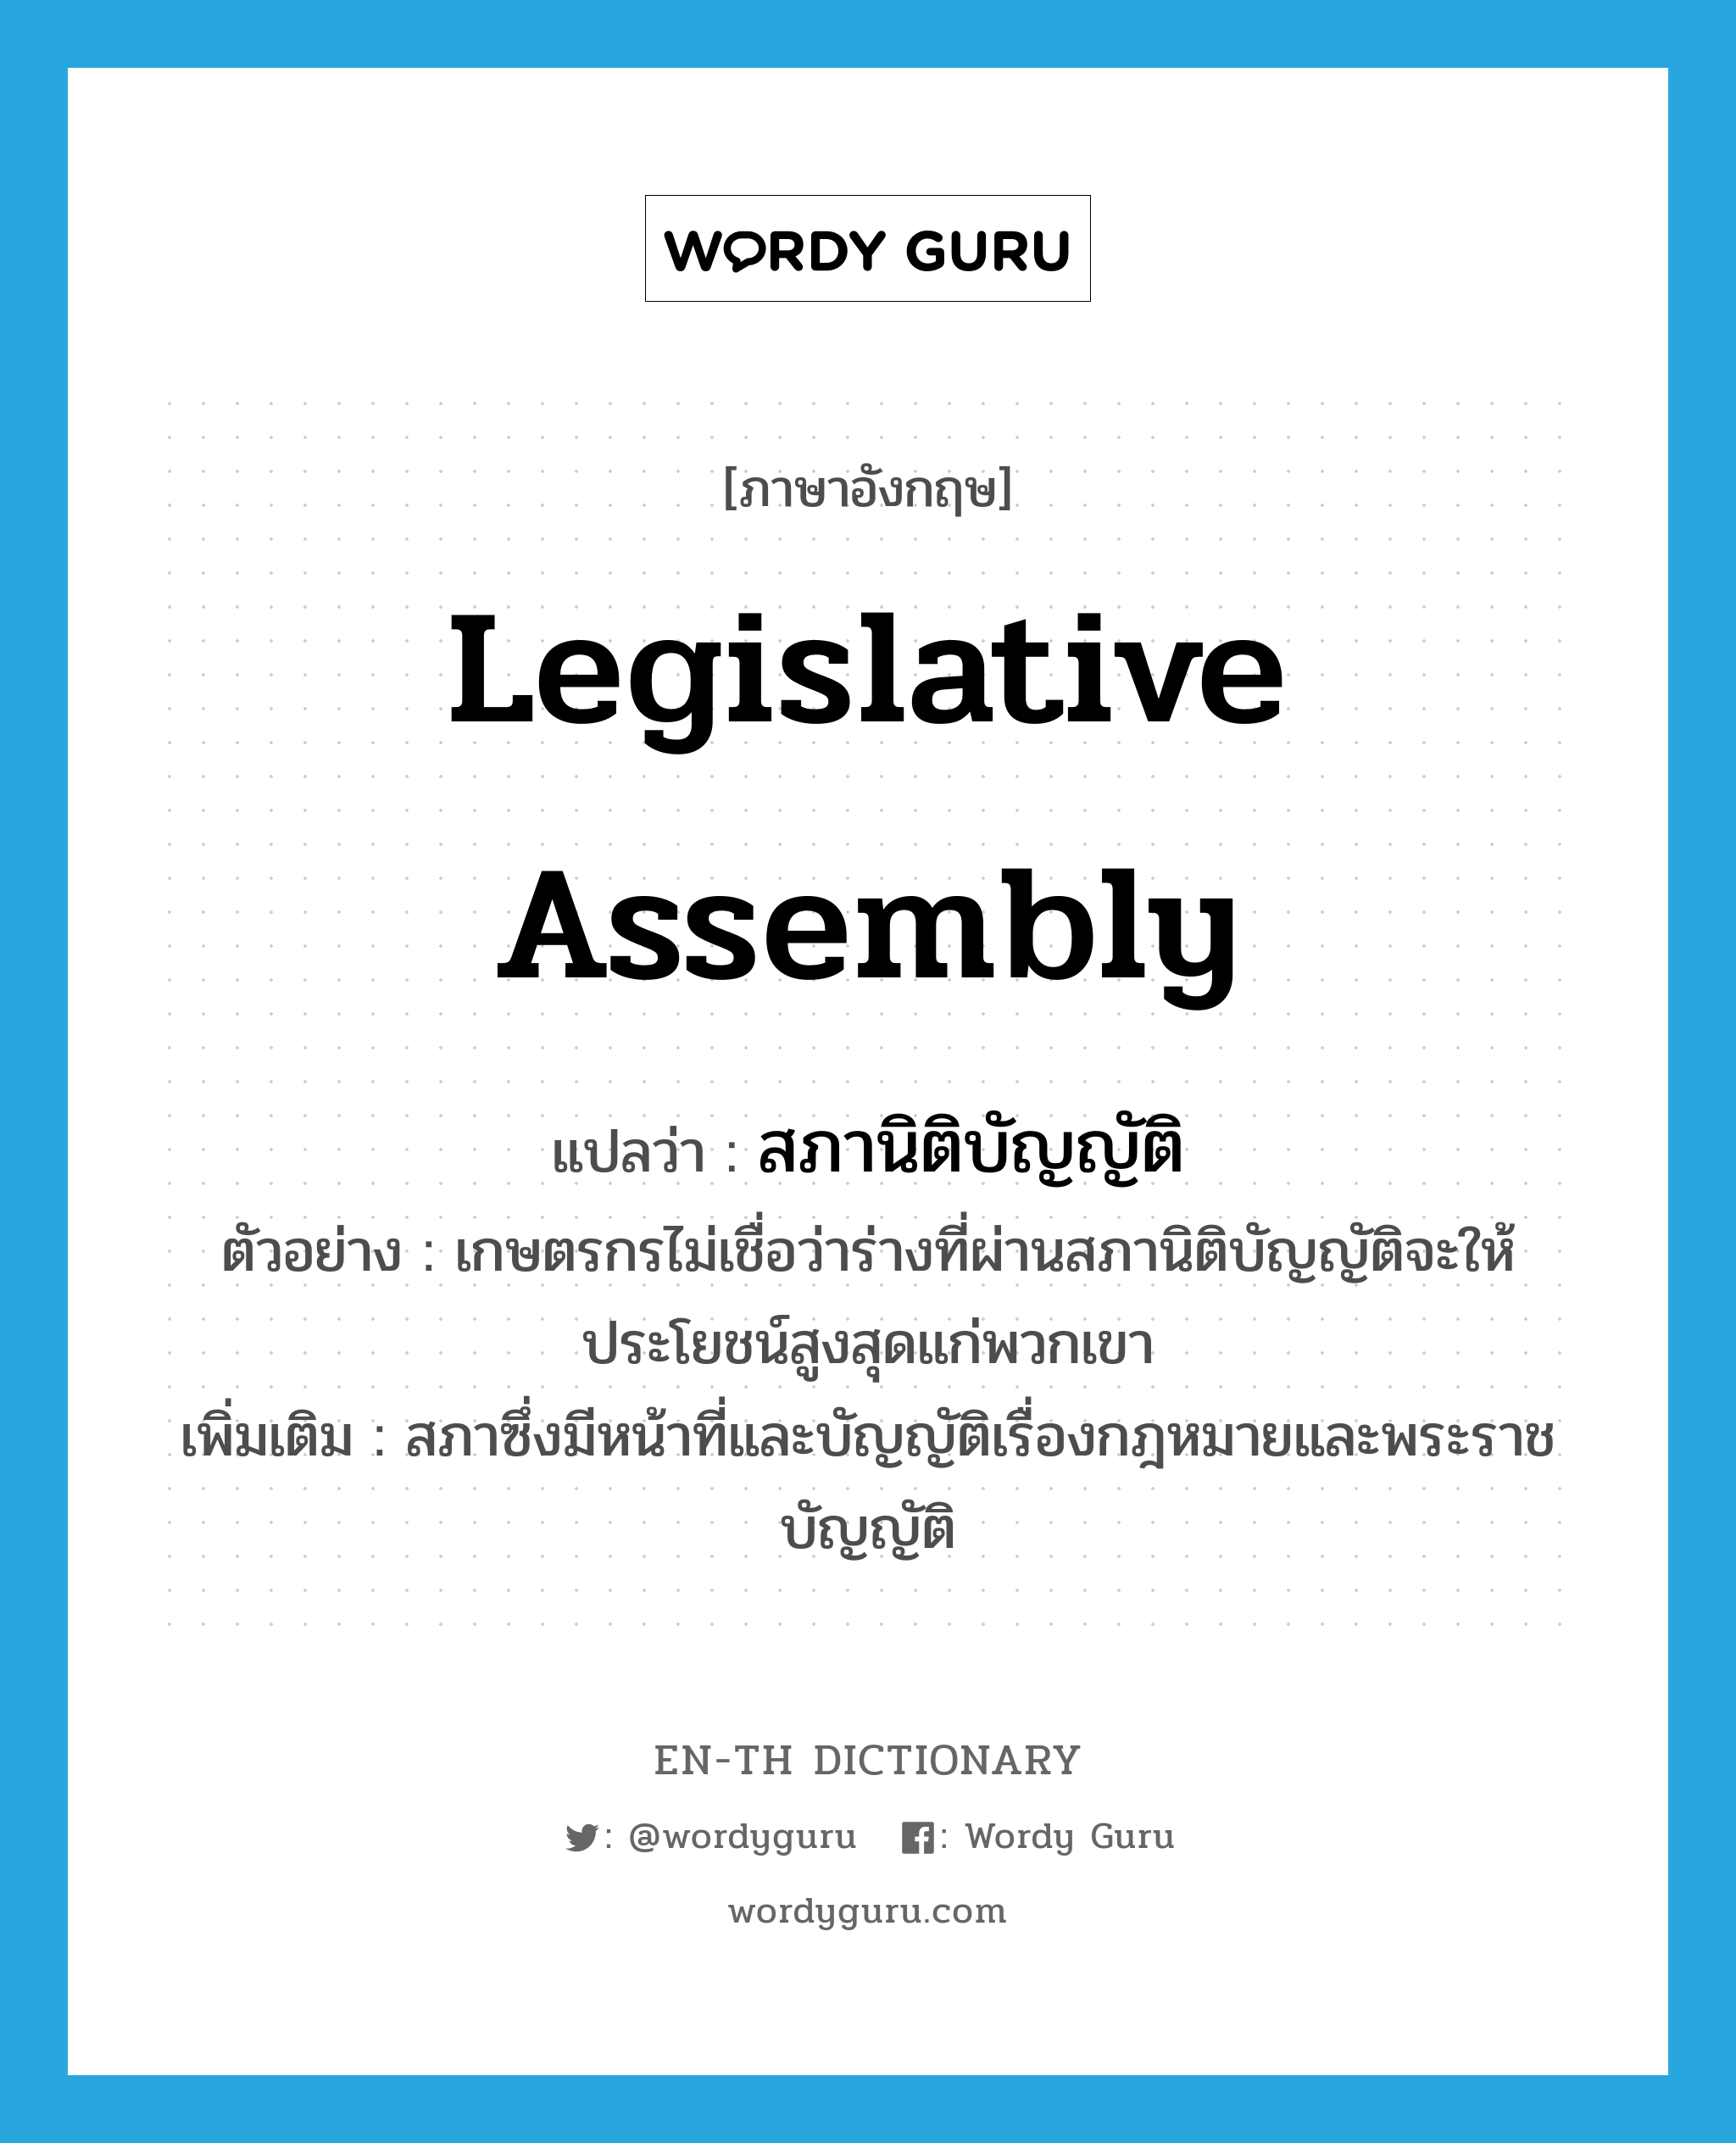 legislative assembly แปลว่า?, คำศัพท์ภาษาอังกฤษ legislative assembly แปลว่า สภานิติบัญญัติ ประเภท N ตัวอย่าง เกษตรกรไม่เชื่อว่าร่างที่ผ่านสภานิติบัญญัติจะให้ประโยชน์สูงสุดแก่พวกเขา เพิ่มเติม สภาซึ่งมีหน้าที่และบัญญัติเรื่องกฎหมายและพระราชบัญญัติ หมวด N